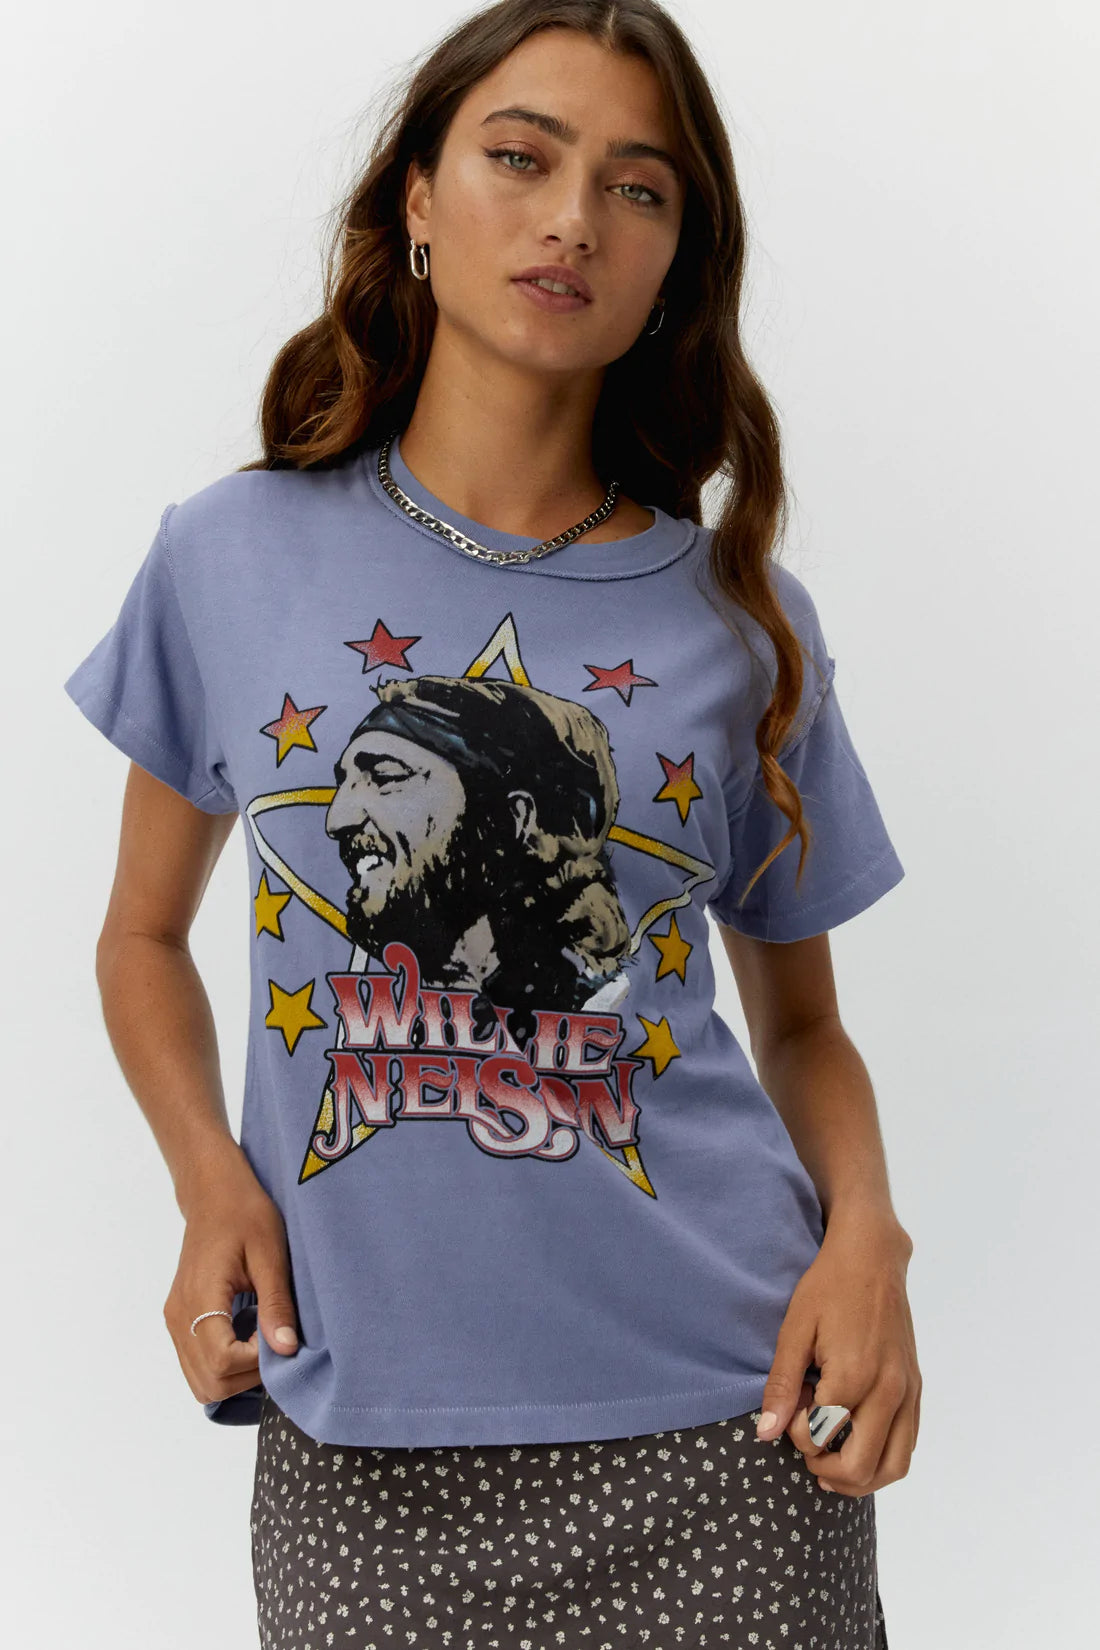 Willie Nelson In Stars Girlfriend Tee